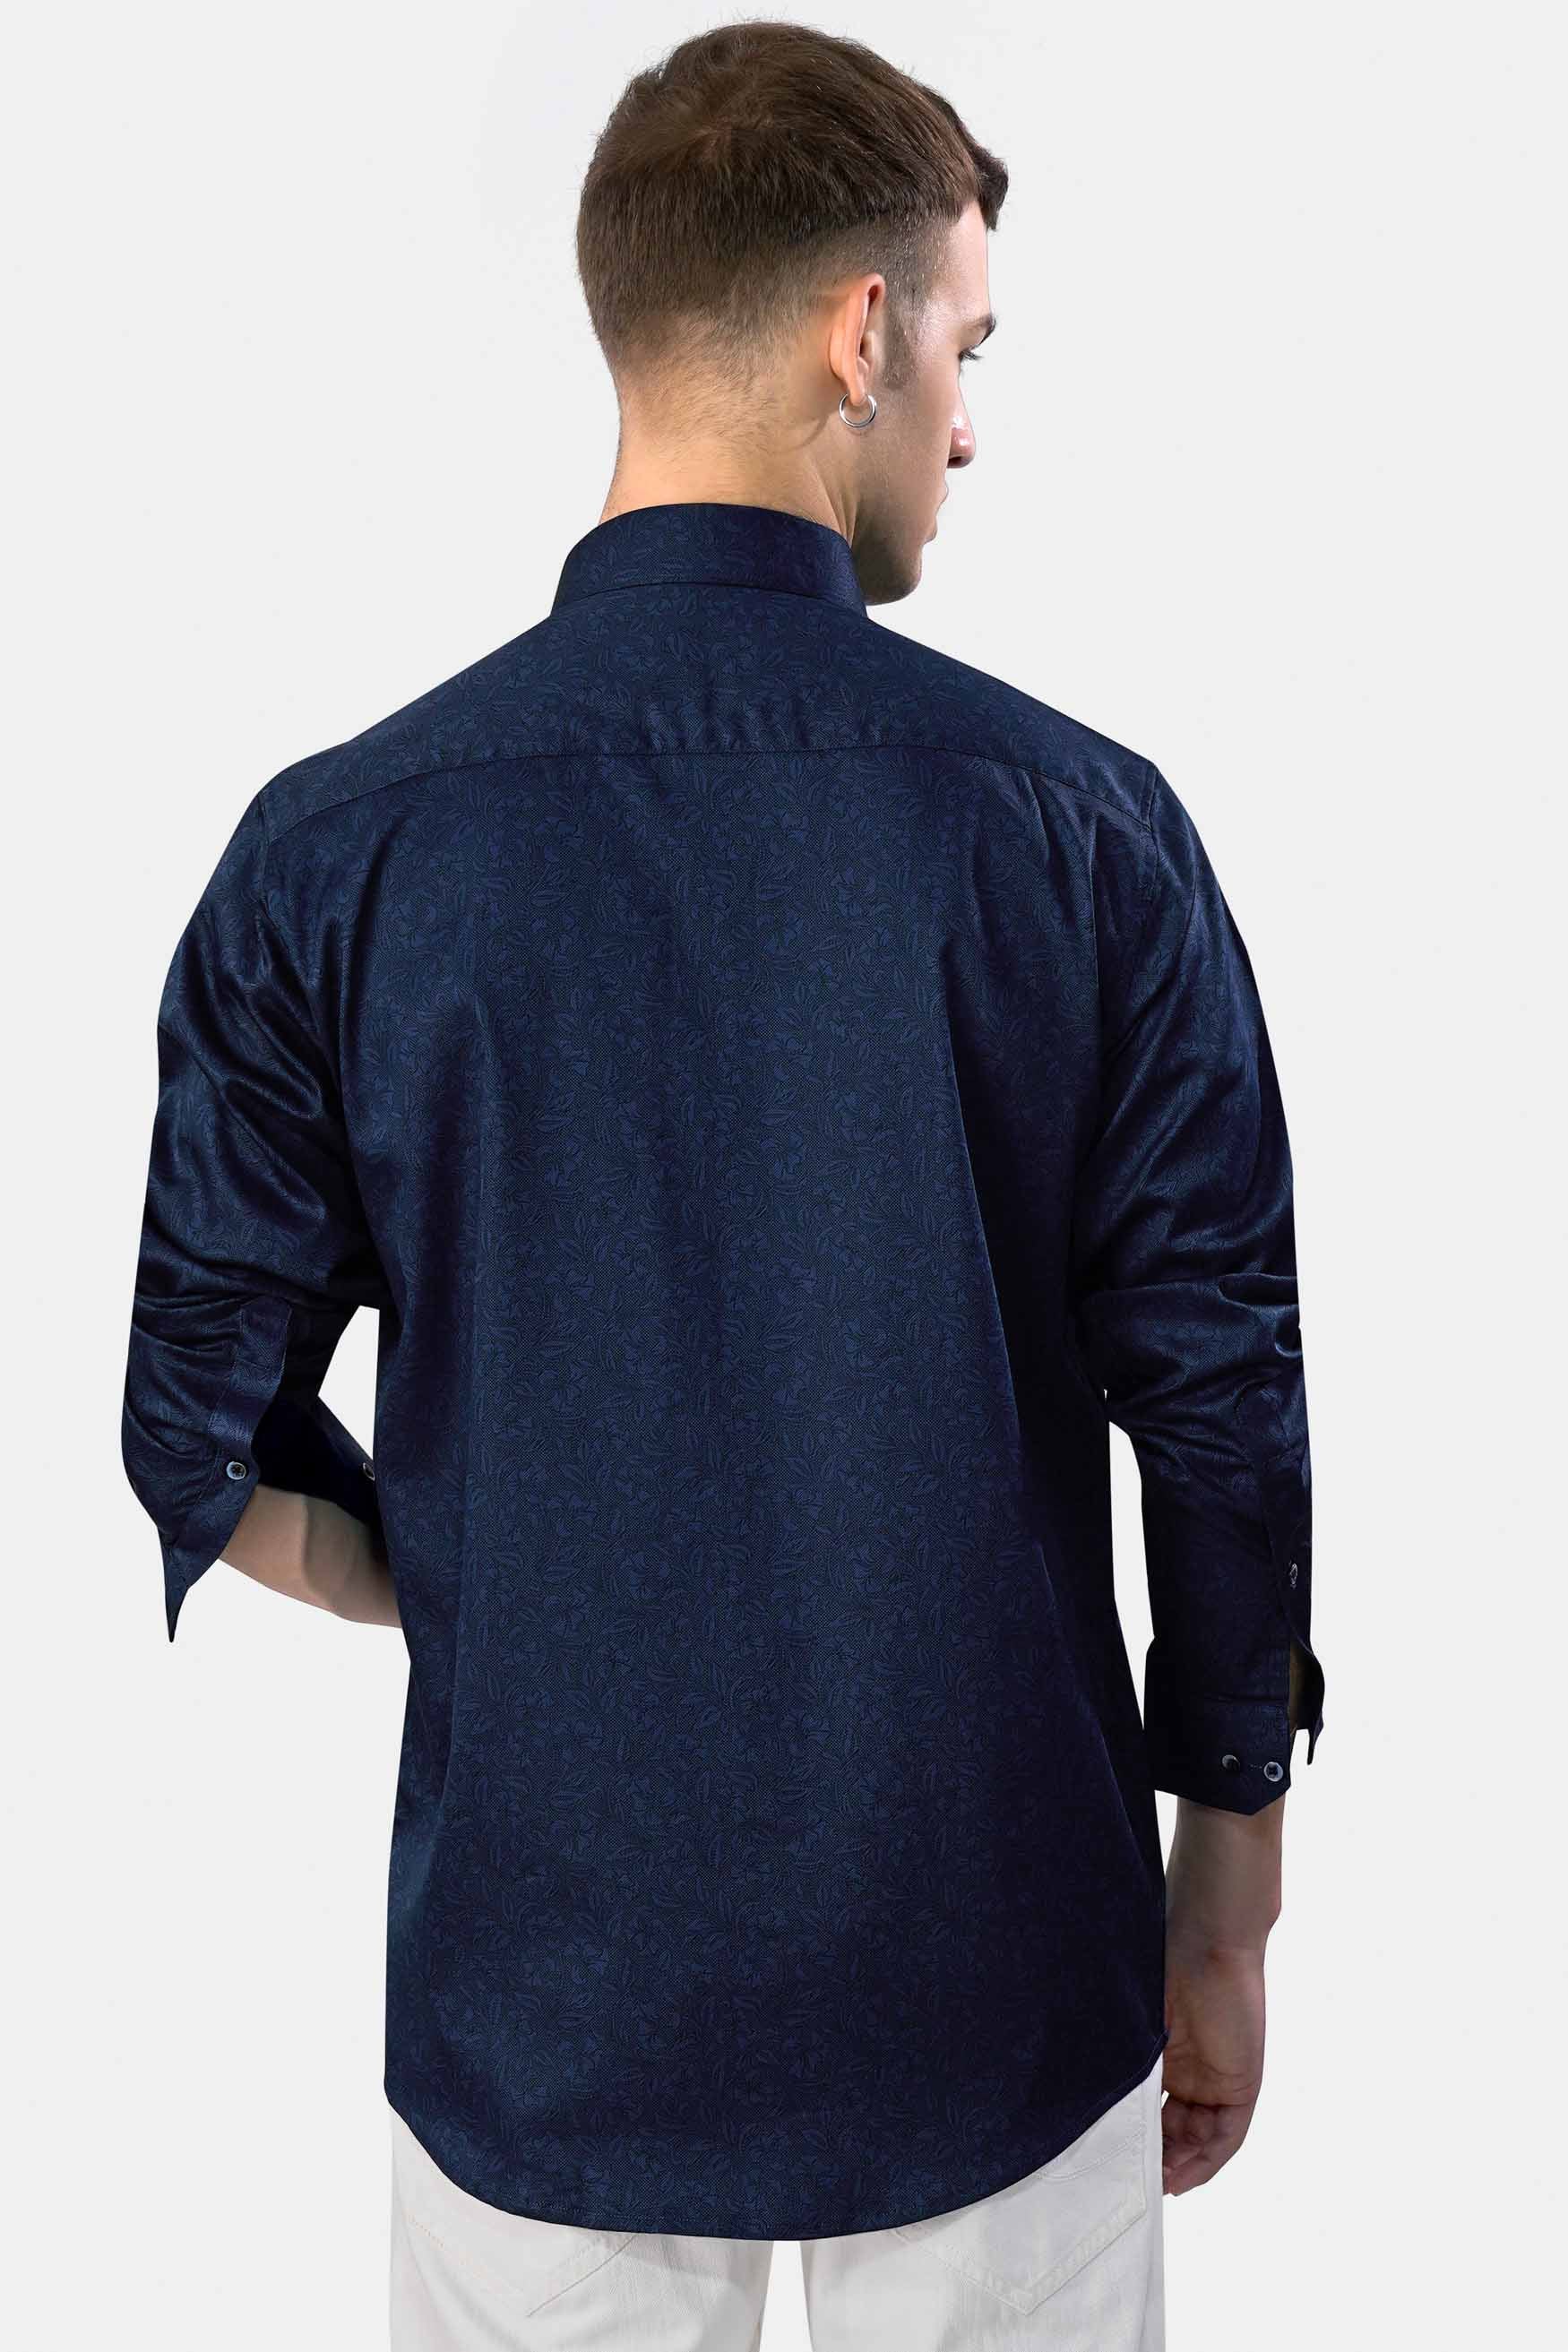 Prussian Blue Subtle Printed Super Soft Premium Cotton Shirt